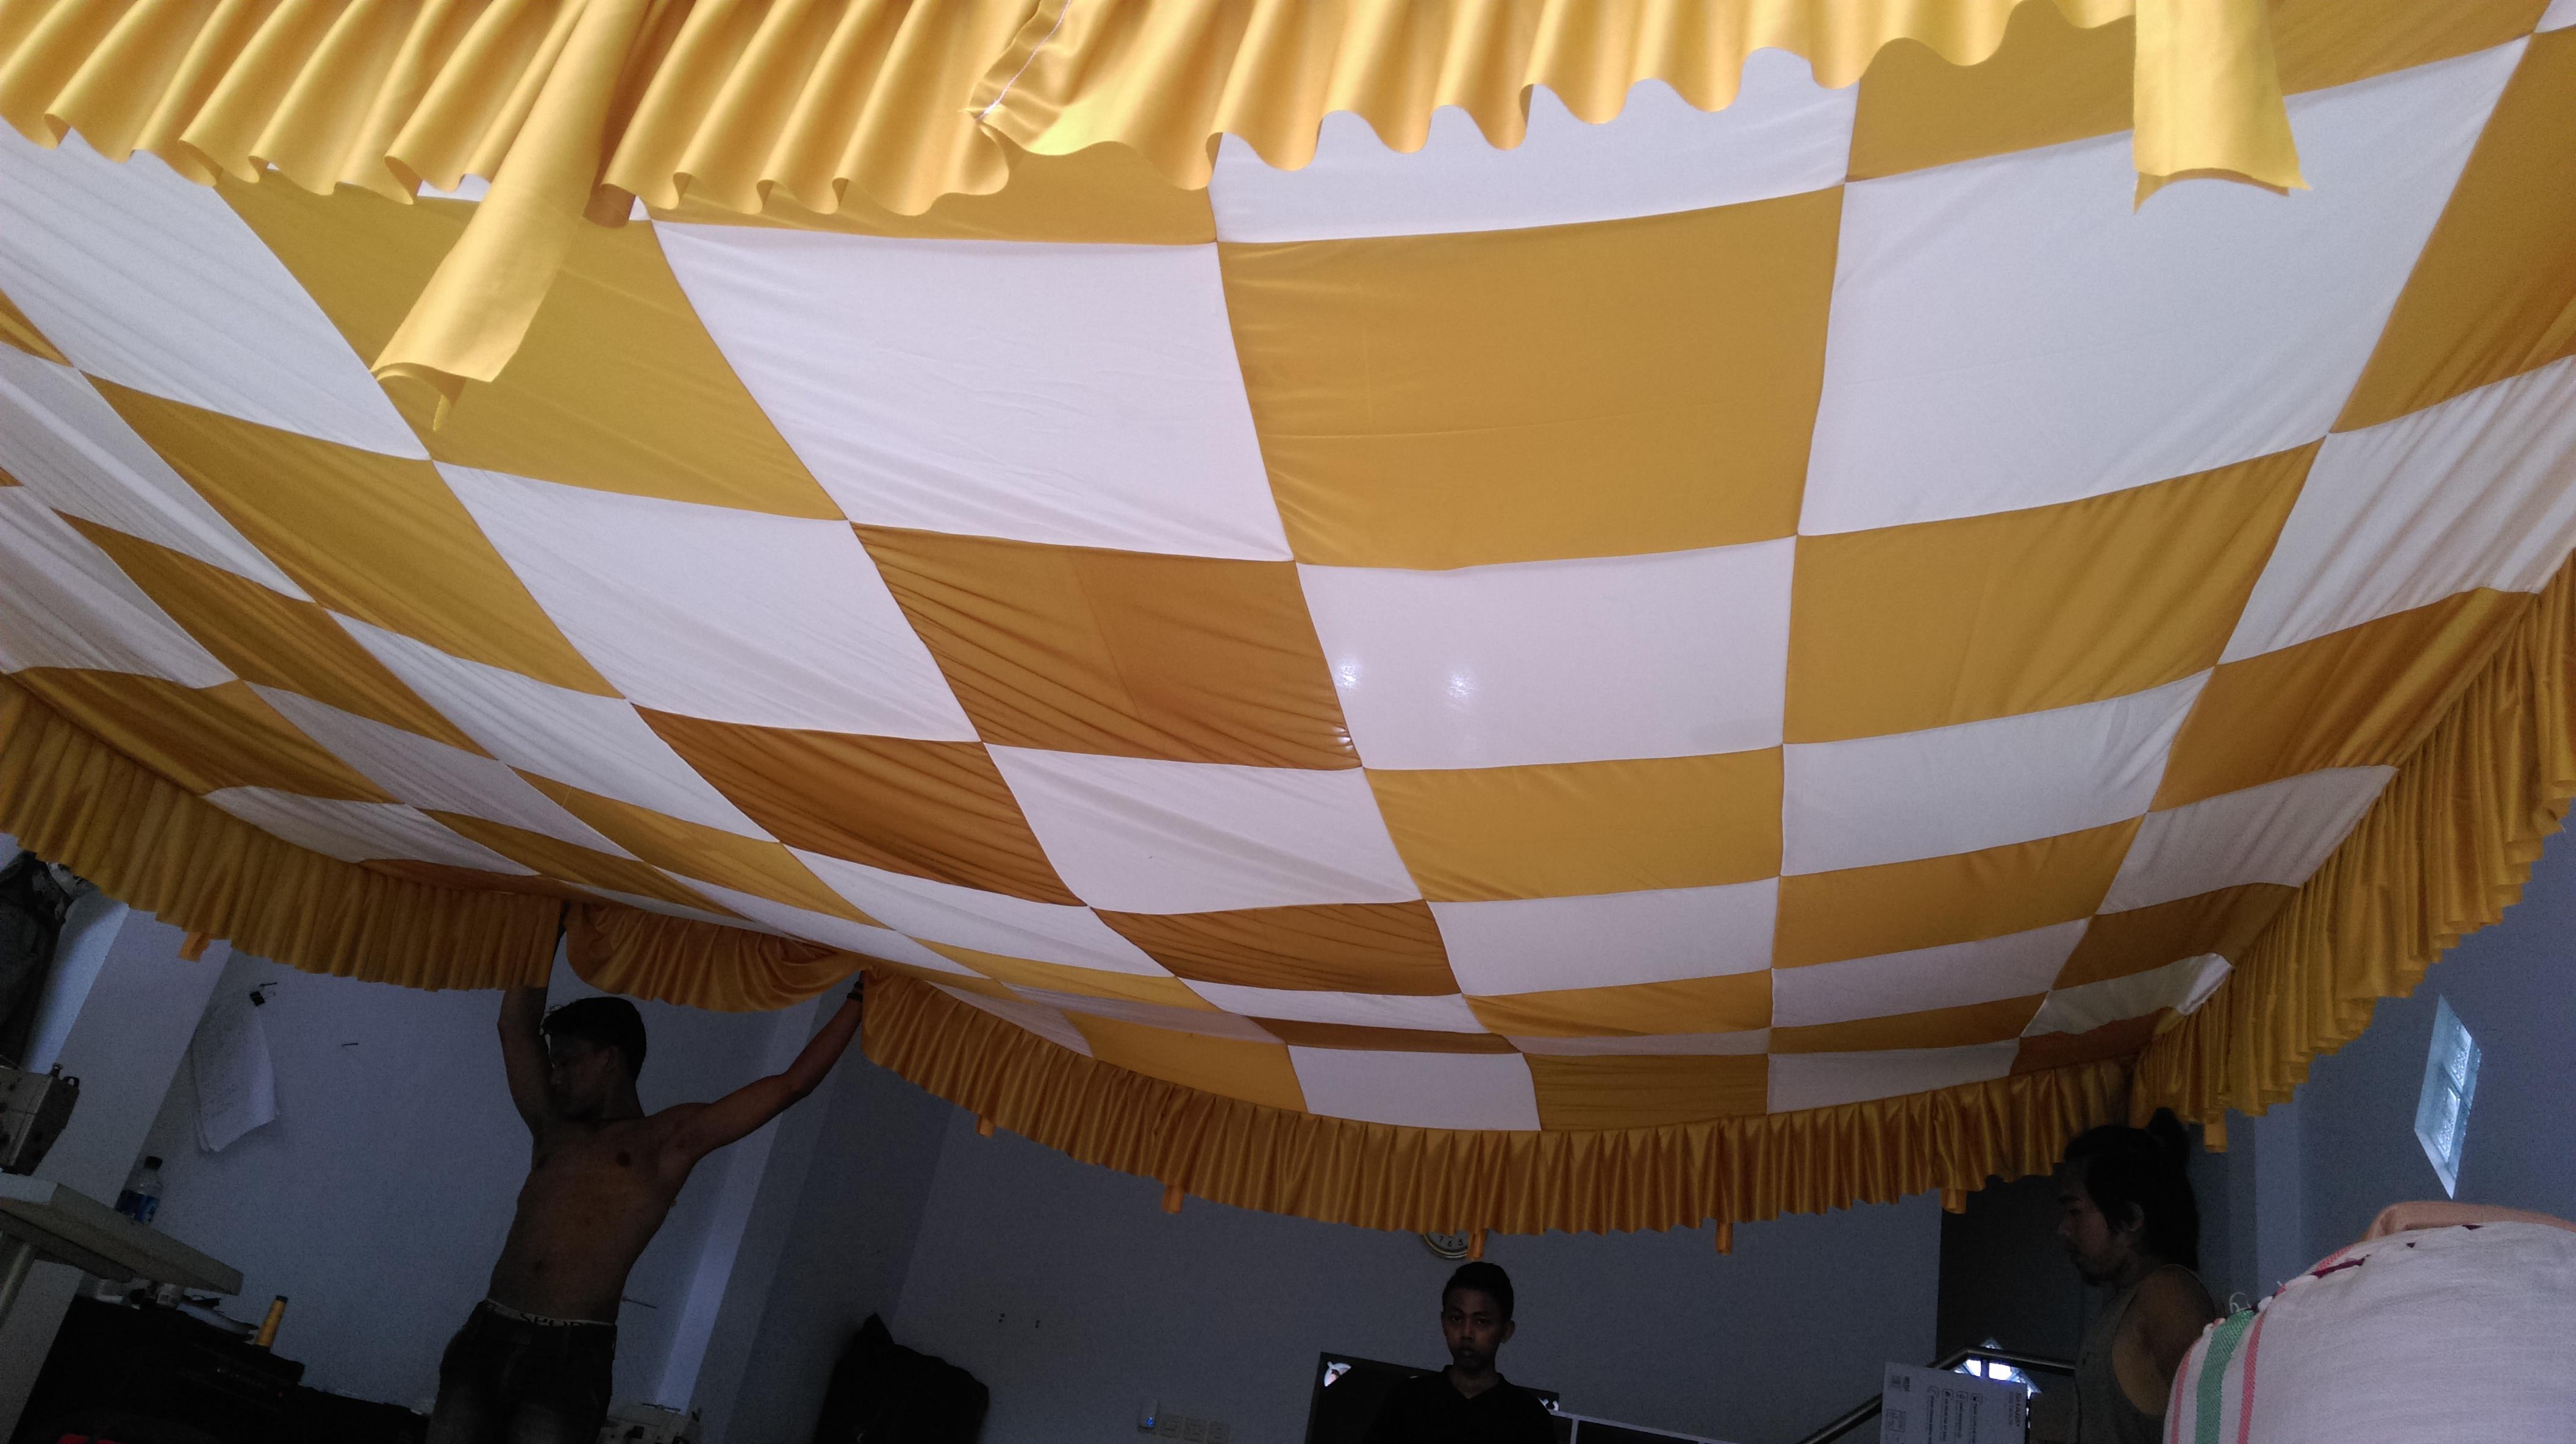 Jual Plafon Tenda Pesta Harga Murah Distributor Dan Toko Beli Online